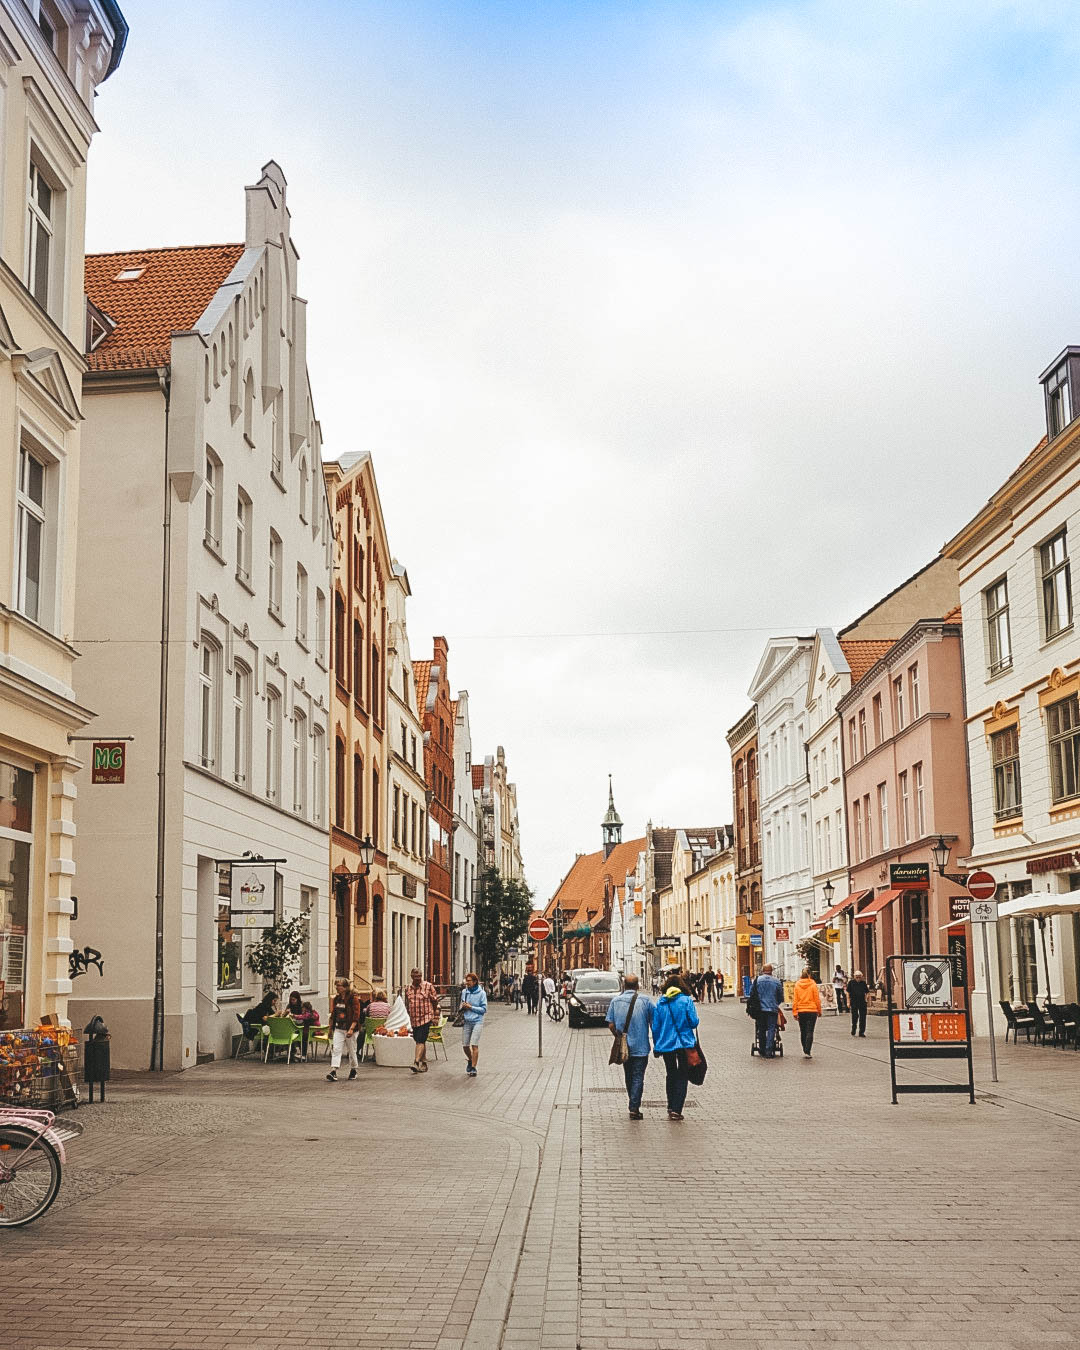 A shopping street in Wismar, Germany. 